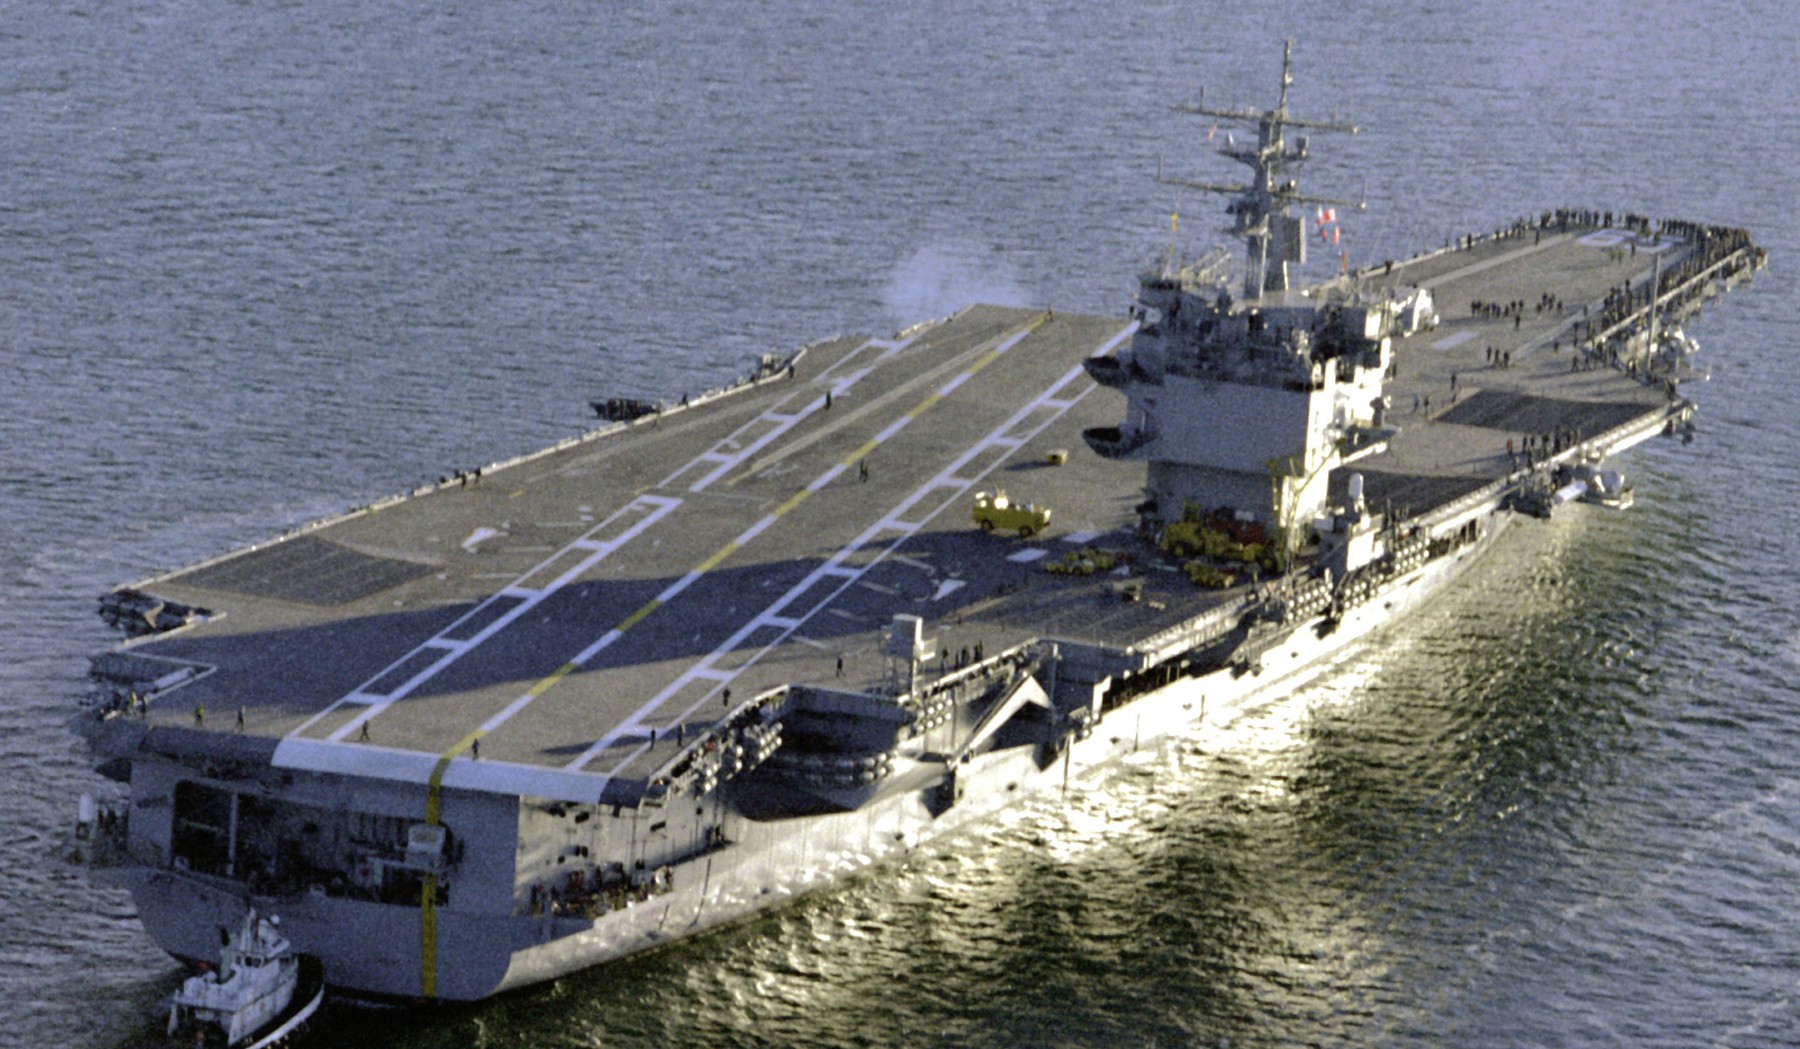 cvn-65 uss enterprise aircraft carrier us navy 166